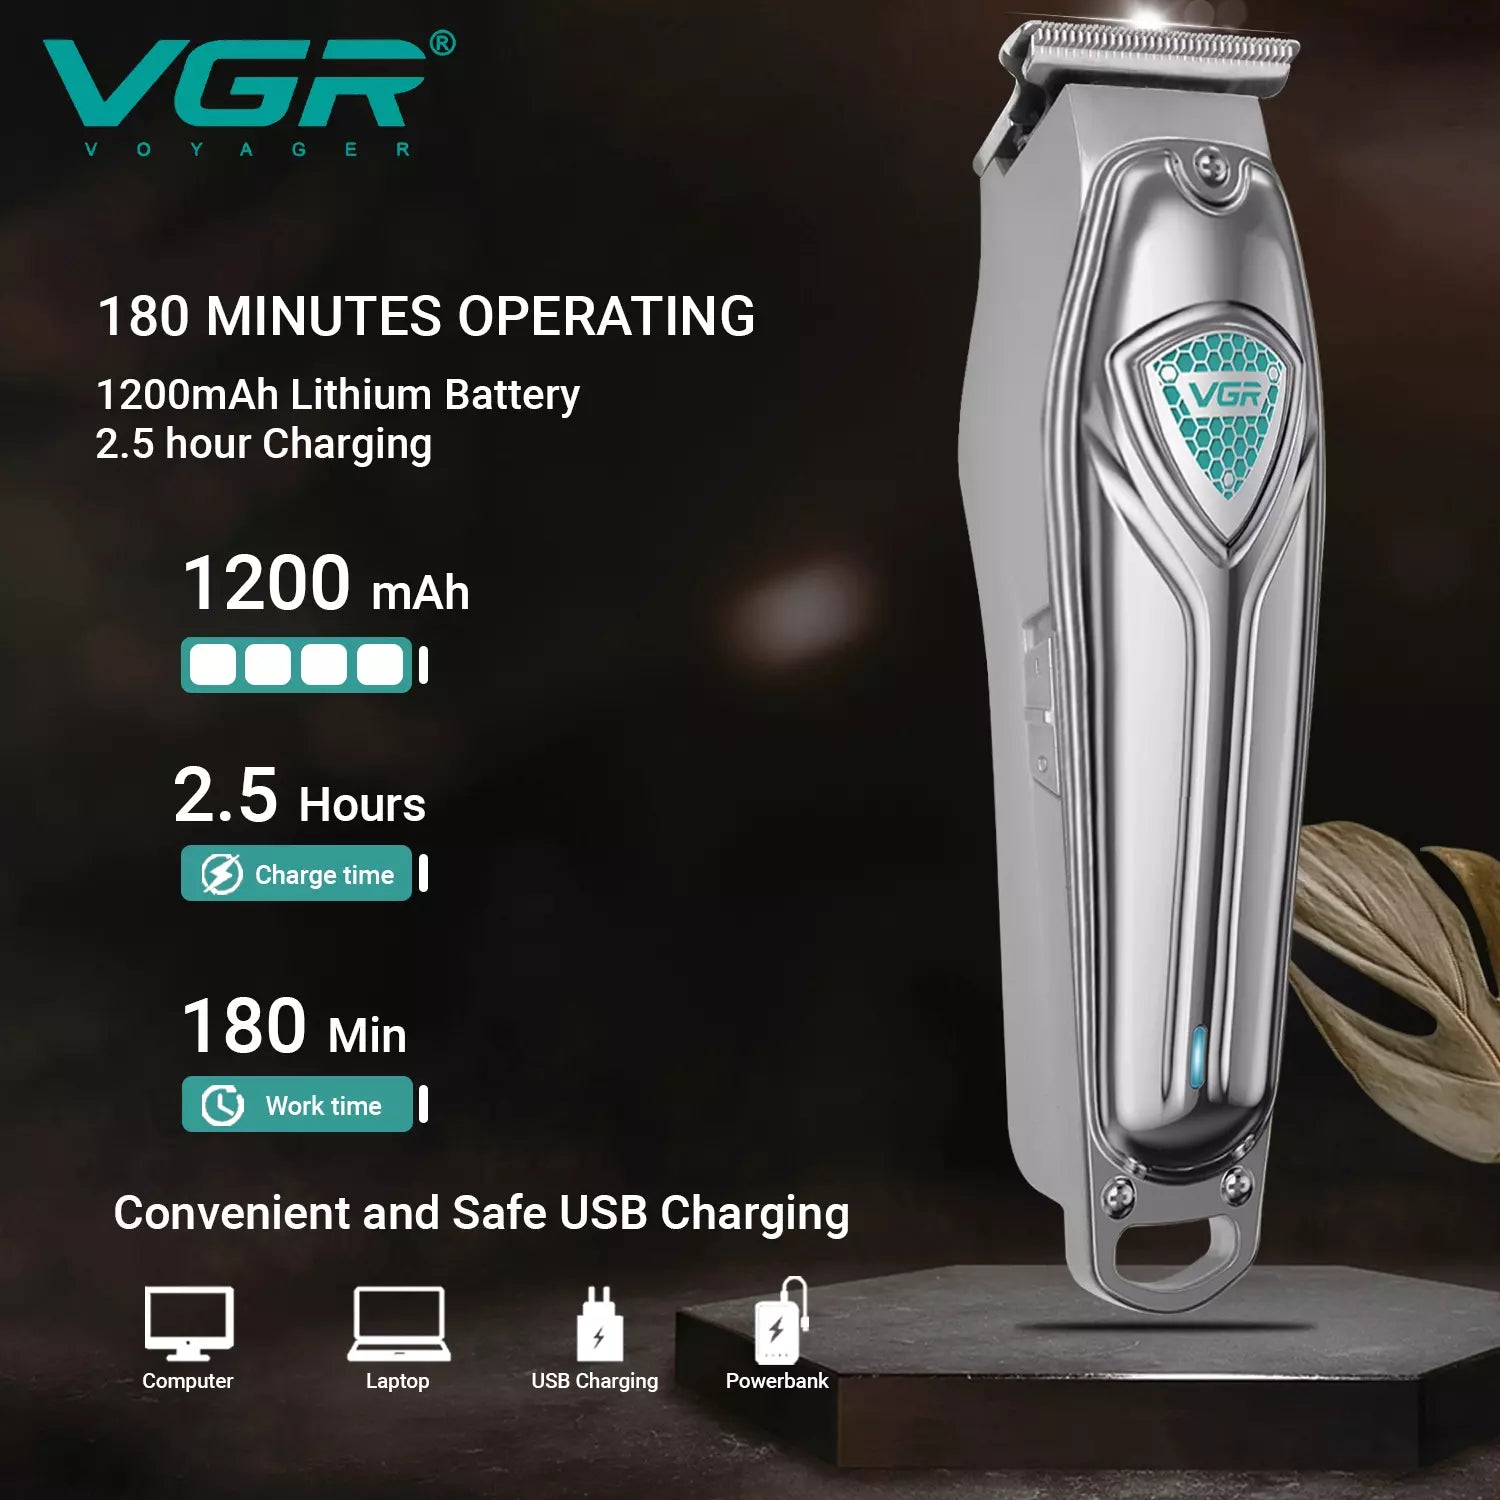 VGR, VGRindia, VGRofficial, VGR V-911